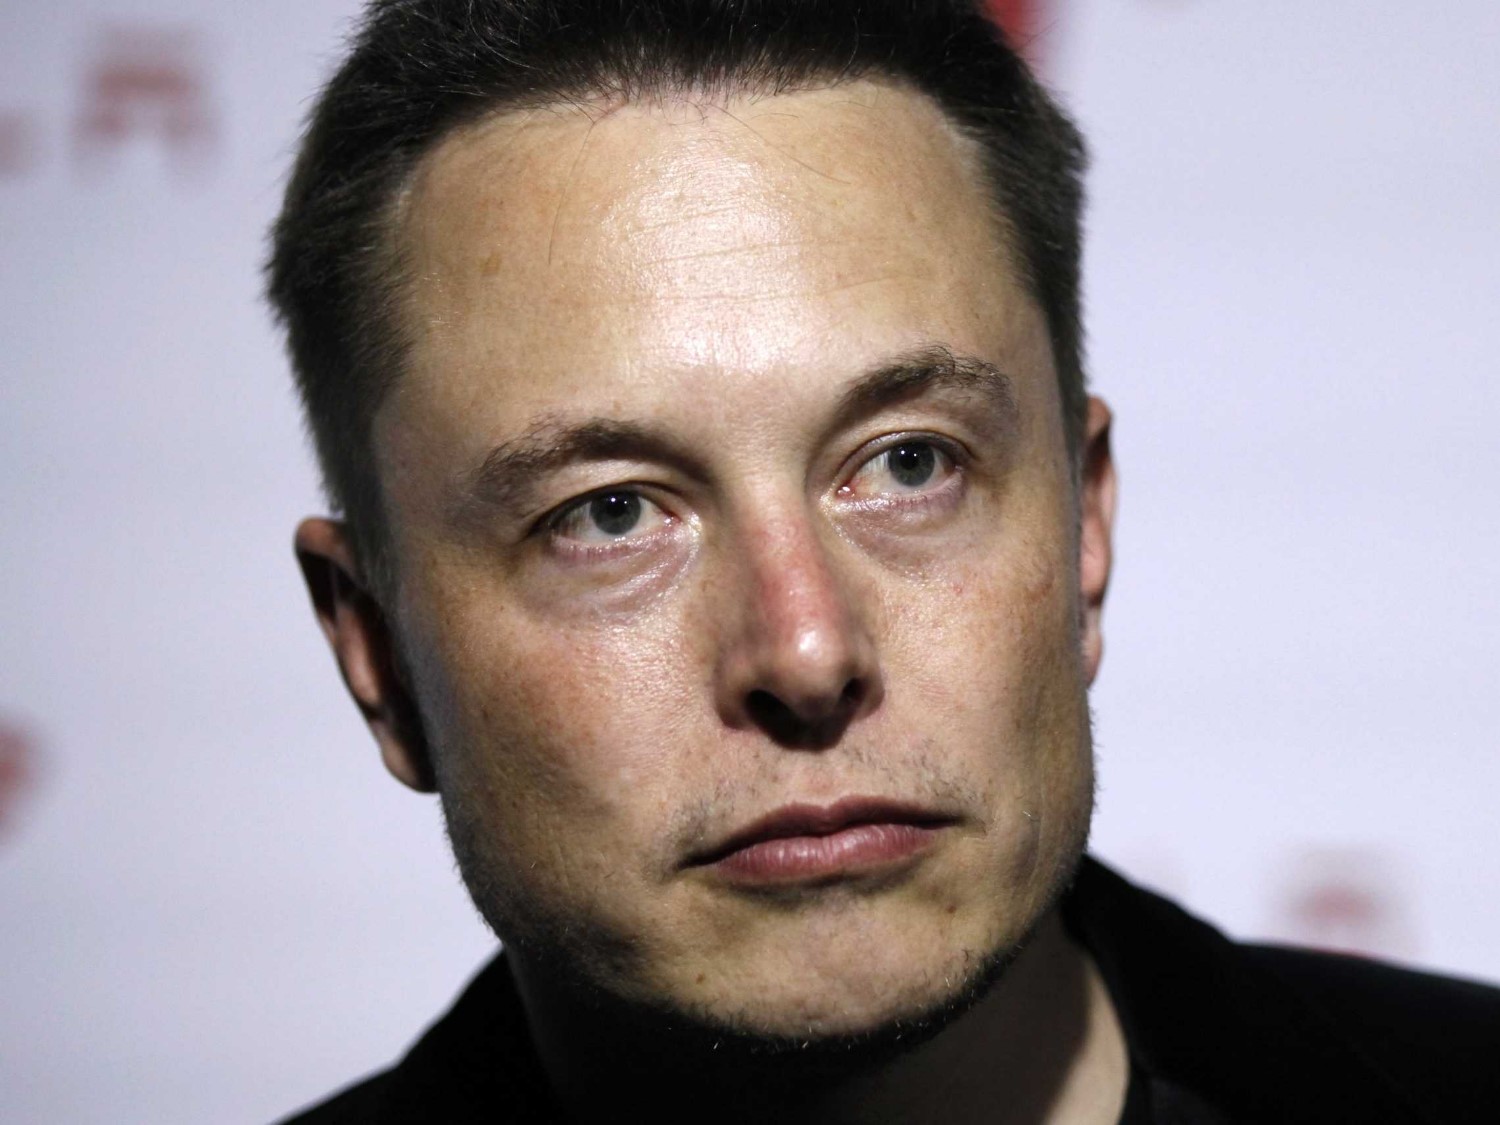 Elon Musk furious. Feels ex-employee ripped off their secrets